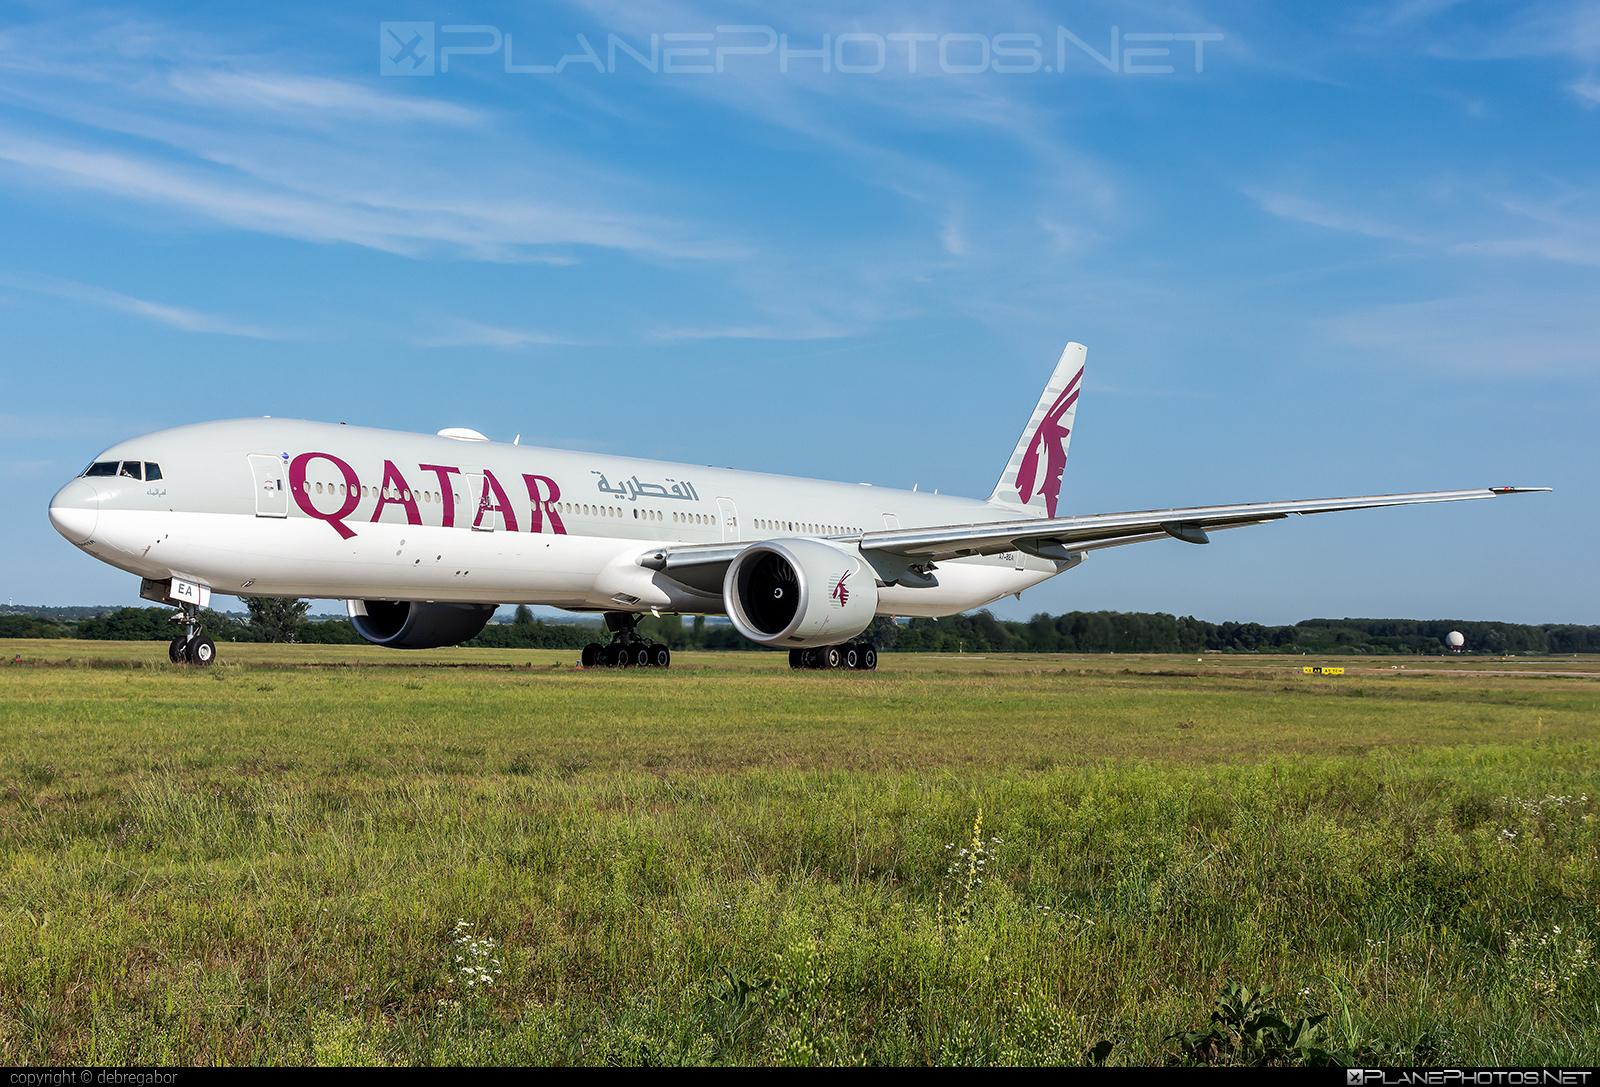 Boeing 777-300ER - A7-BEA operated by Qatar Airways #b777 #b777er #boeing #boeing777 #qatarairways #tripleseven